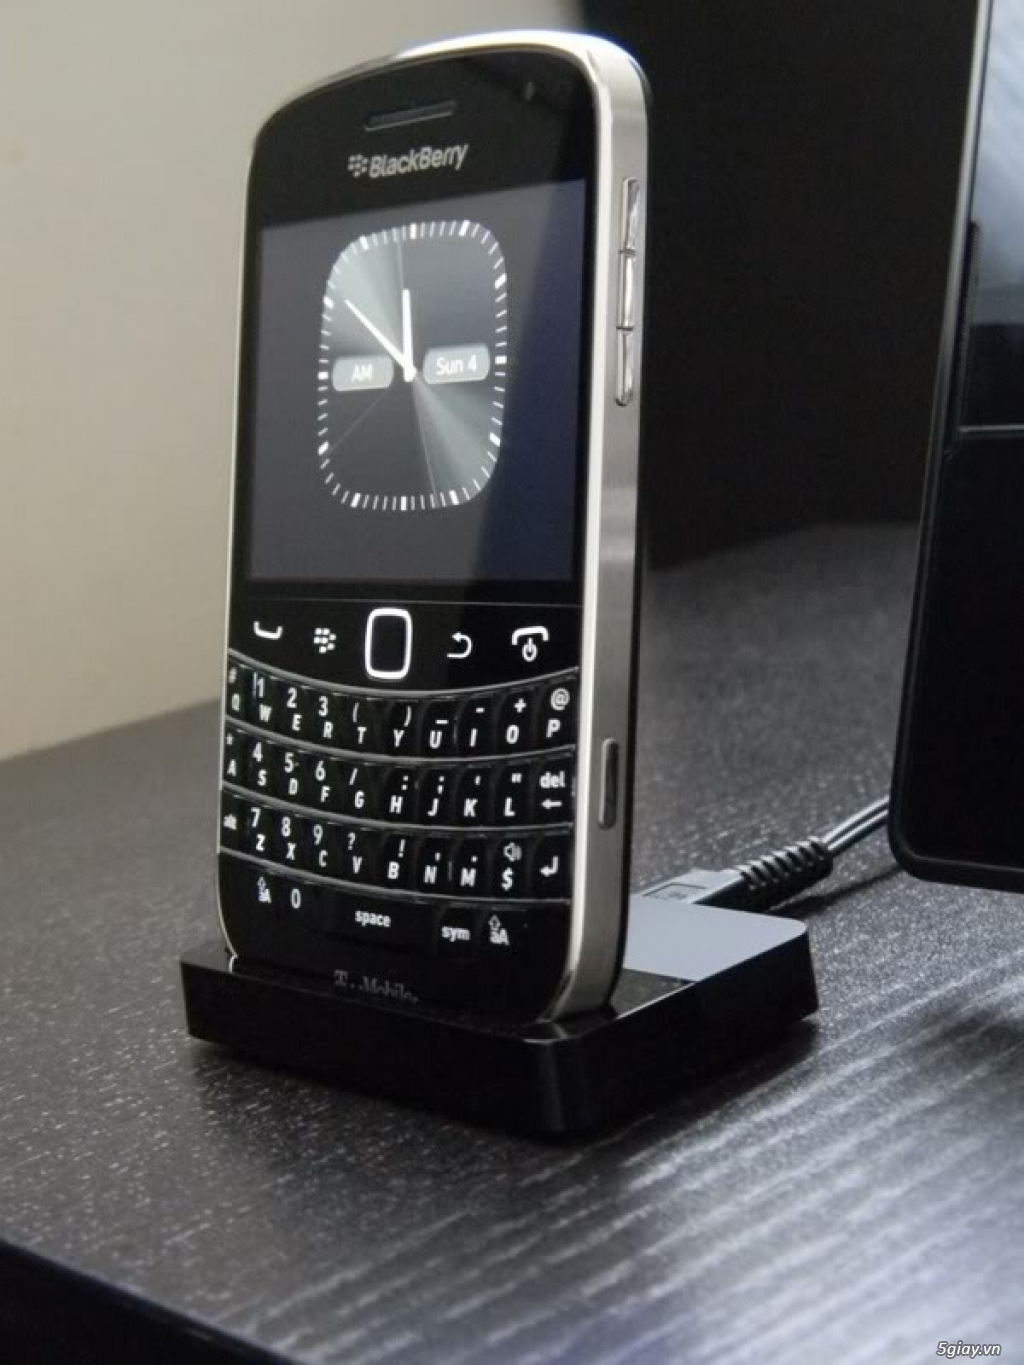 Dock Blackberry - 16